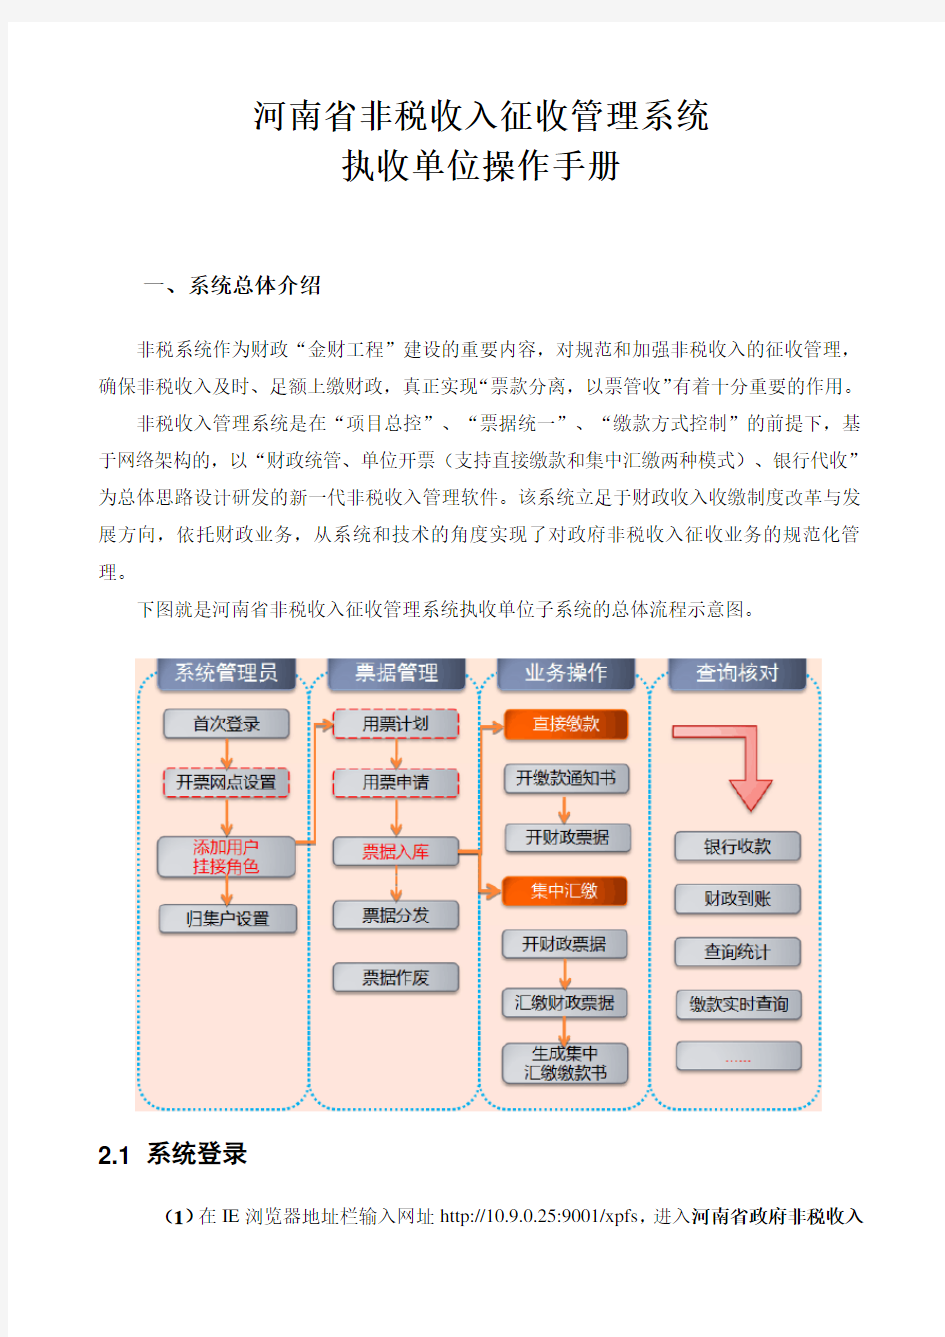 河南省非税收入管理系统执收单位端简易流程